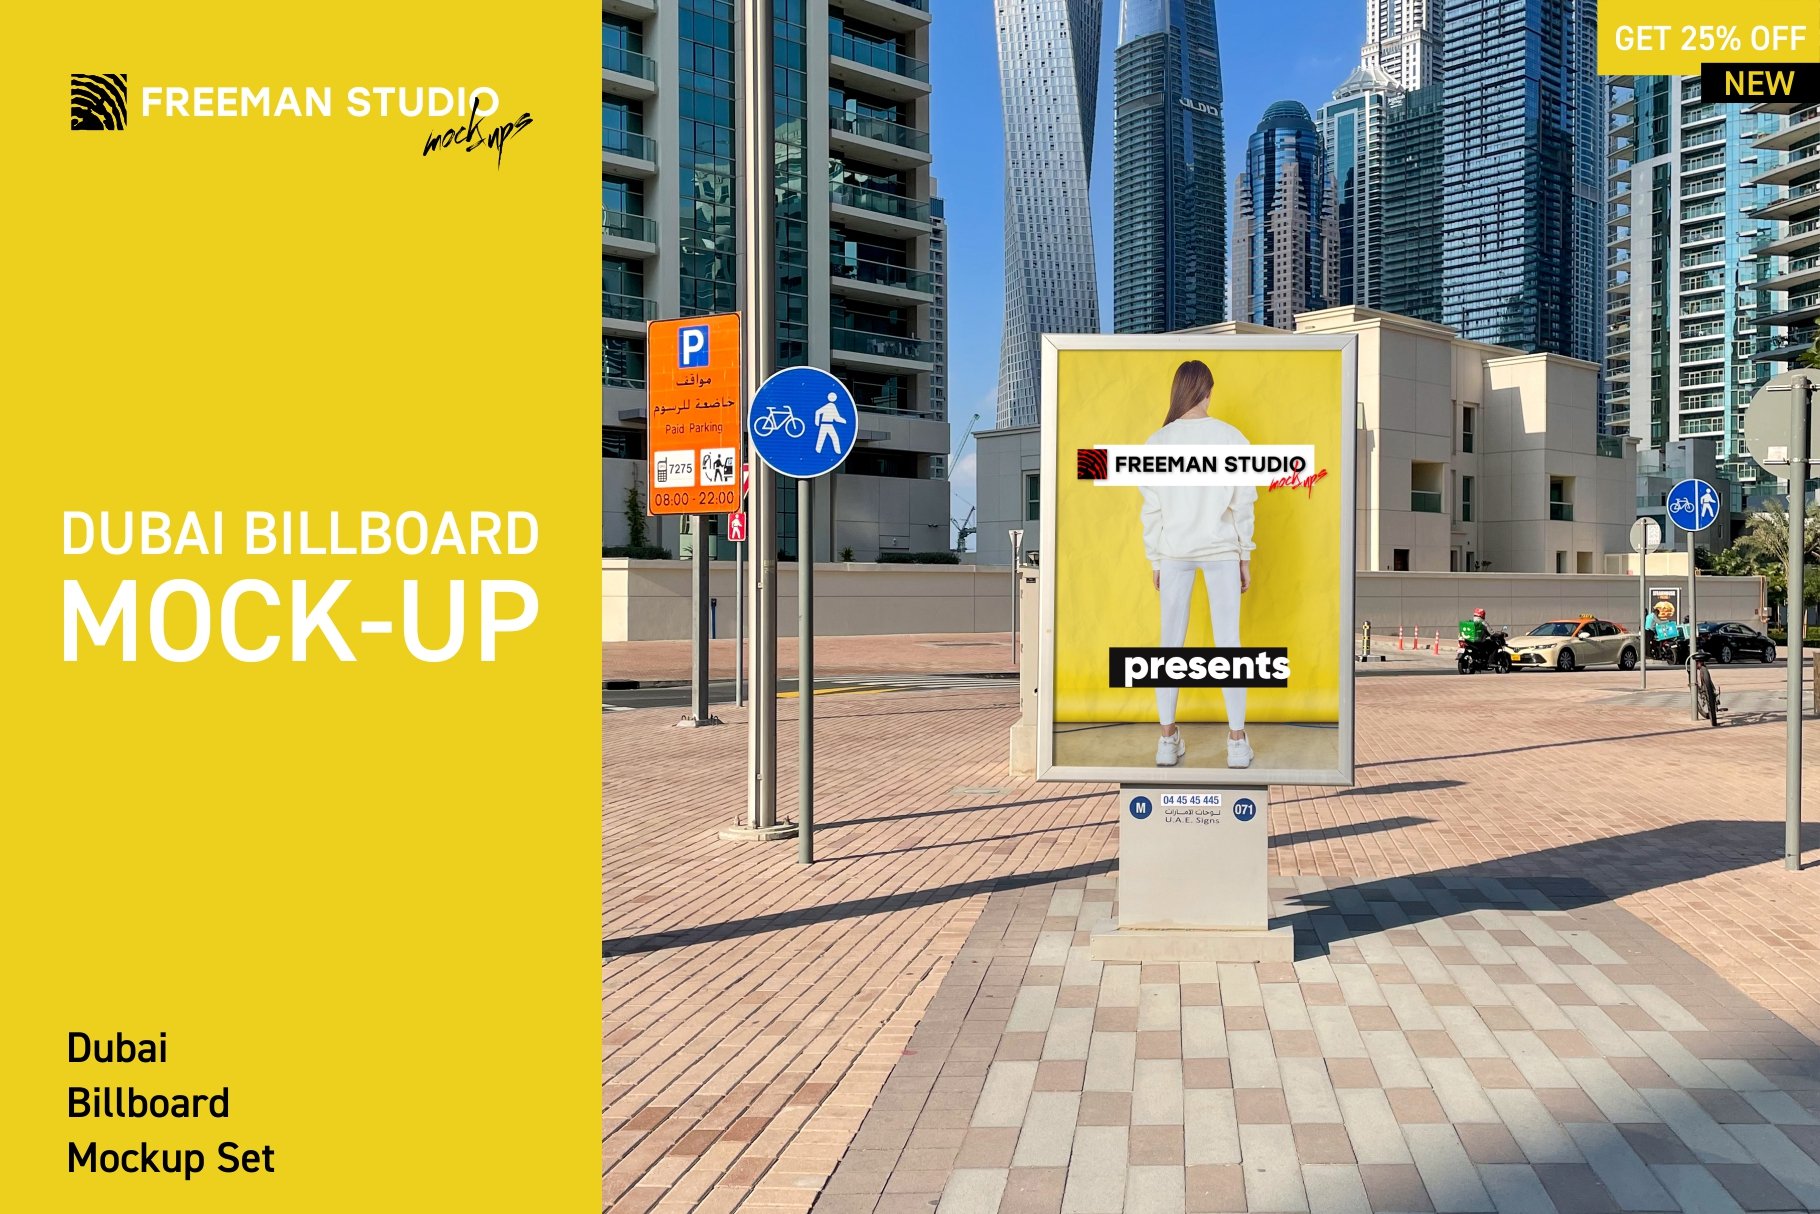 Dubai Billboards Mock-Up Set cover image.